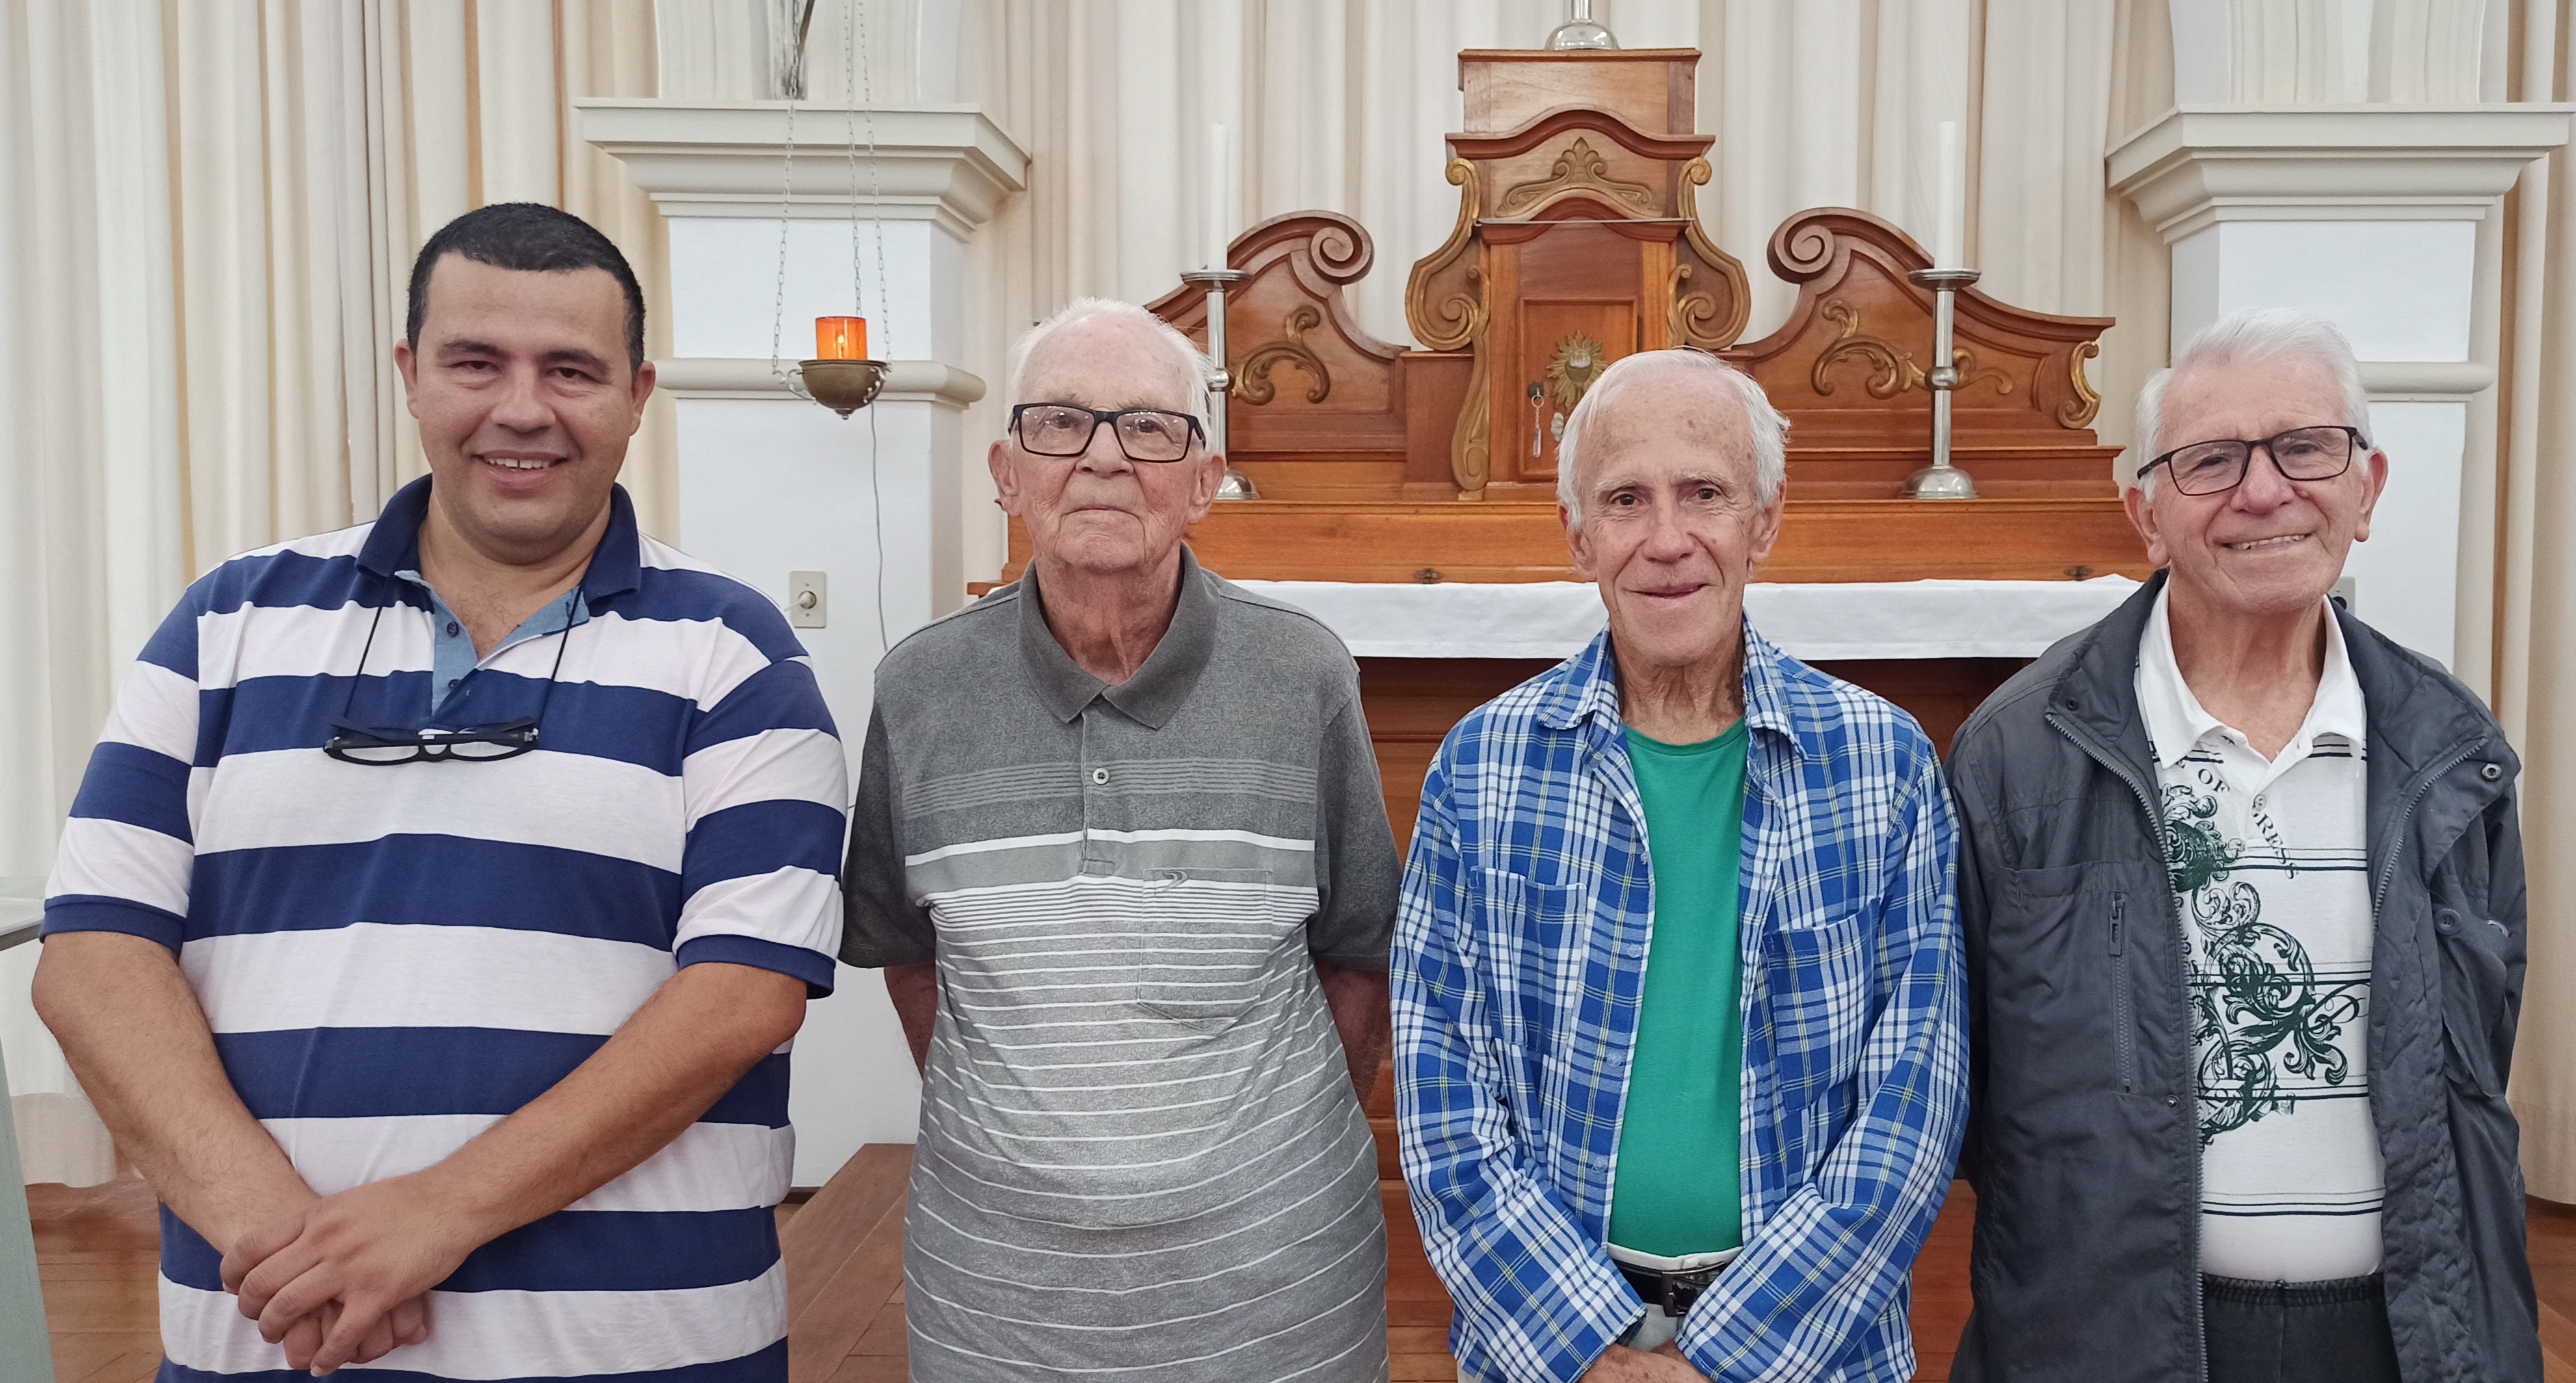 Comunidade religiosa: Irmãos Claudio, Berchmans, Domingos e Daniel